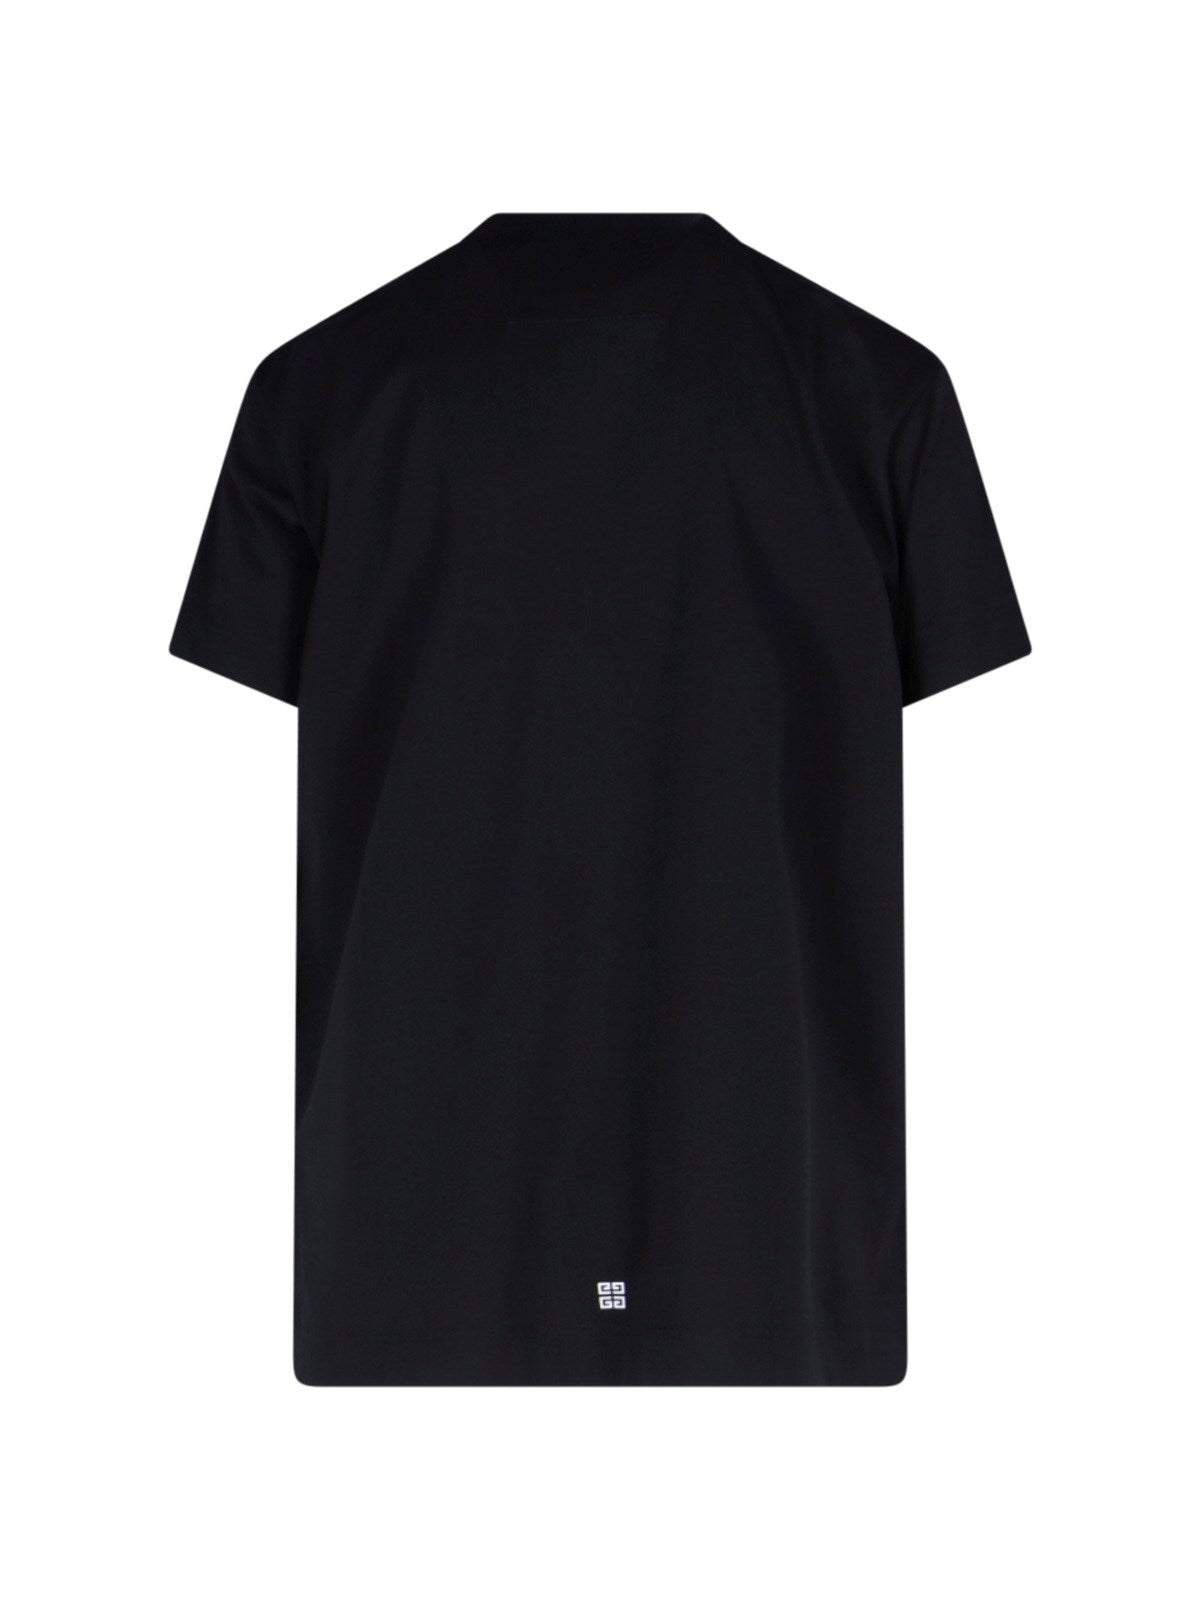 Givenchy T-Shirt oversize "archetype"-t-shirt-Givenchy-T-shirt oversize "archetype" Givenchy, in cotone nero, girocollo, maniche corte, stampa logo a contrasto fronte, stampa mini logo retro, orlo dritto.-Dresso